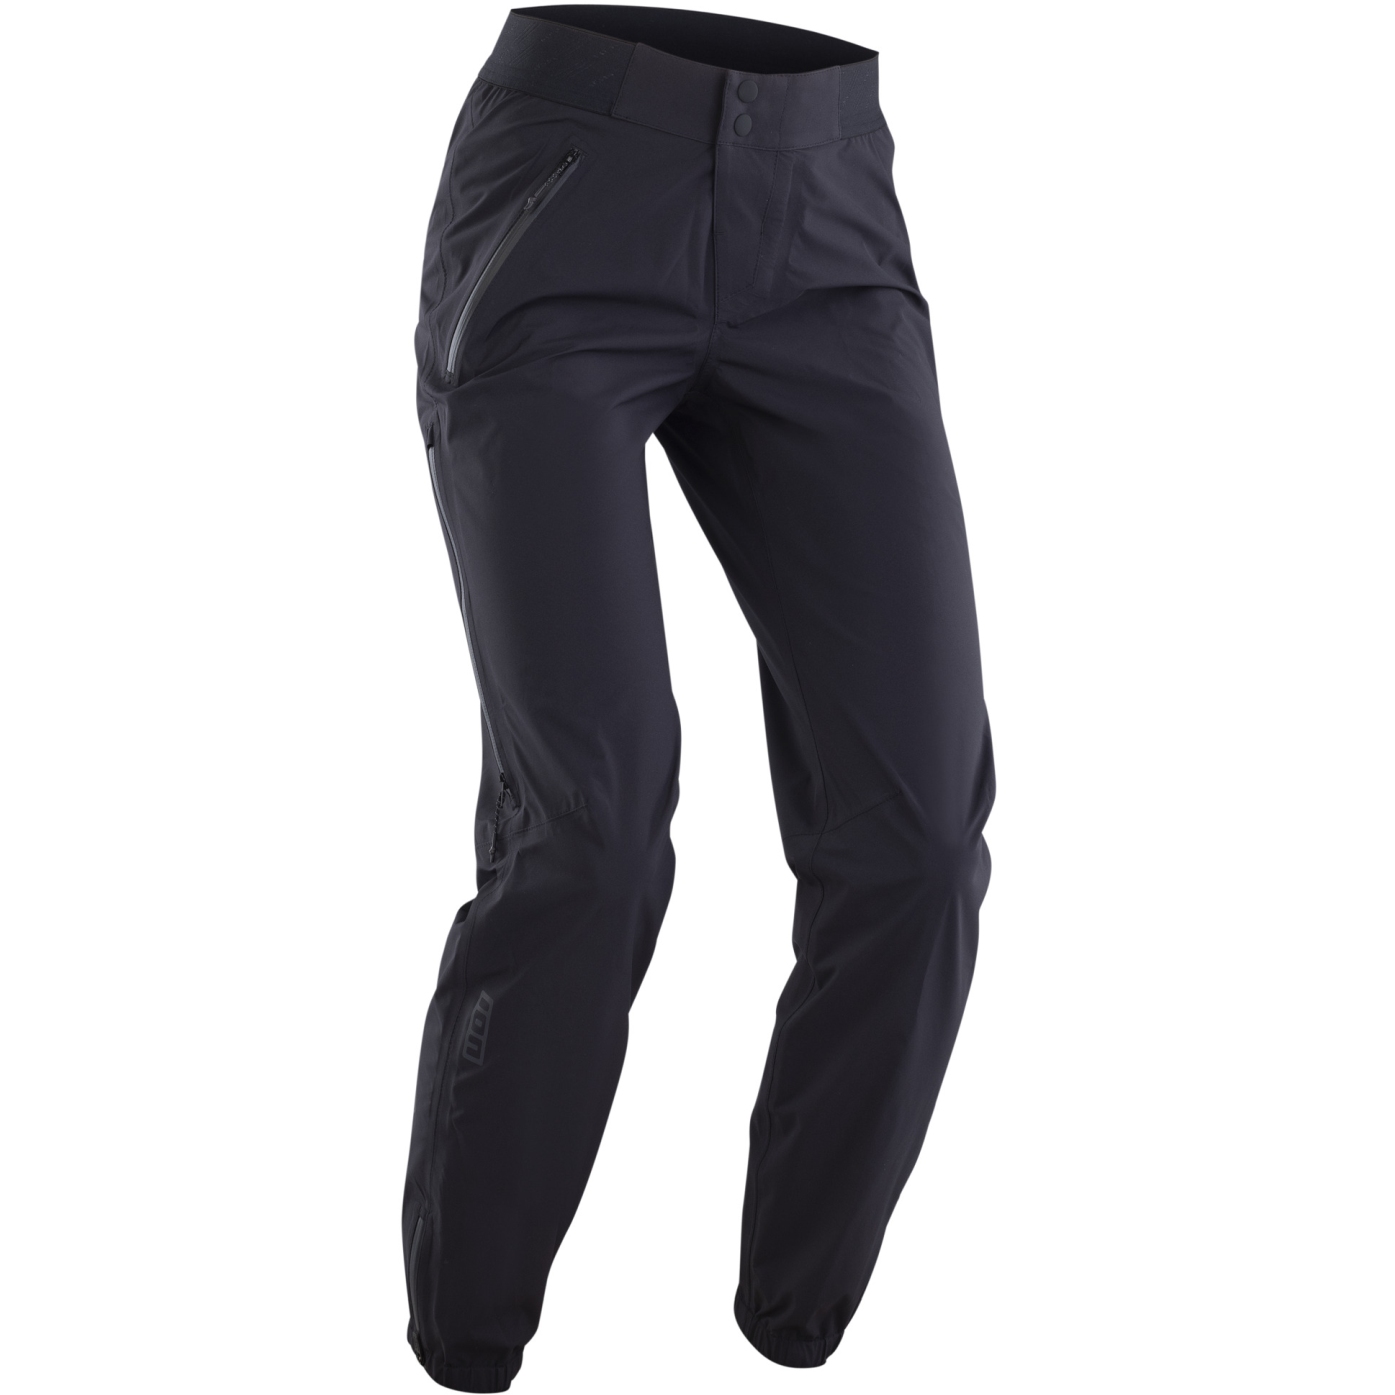 Foto de ION Bike Outerwear 2.5 Capas Pantalones Impermeables - Shelter Lite - Negro